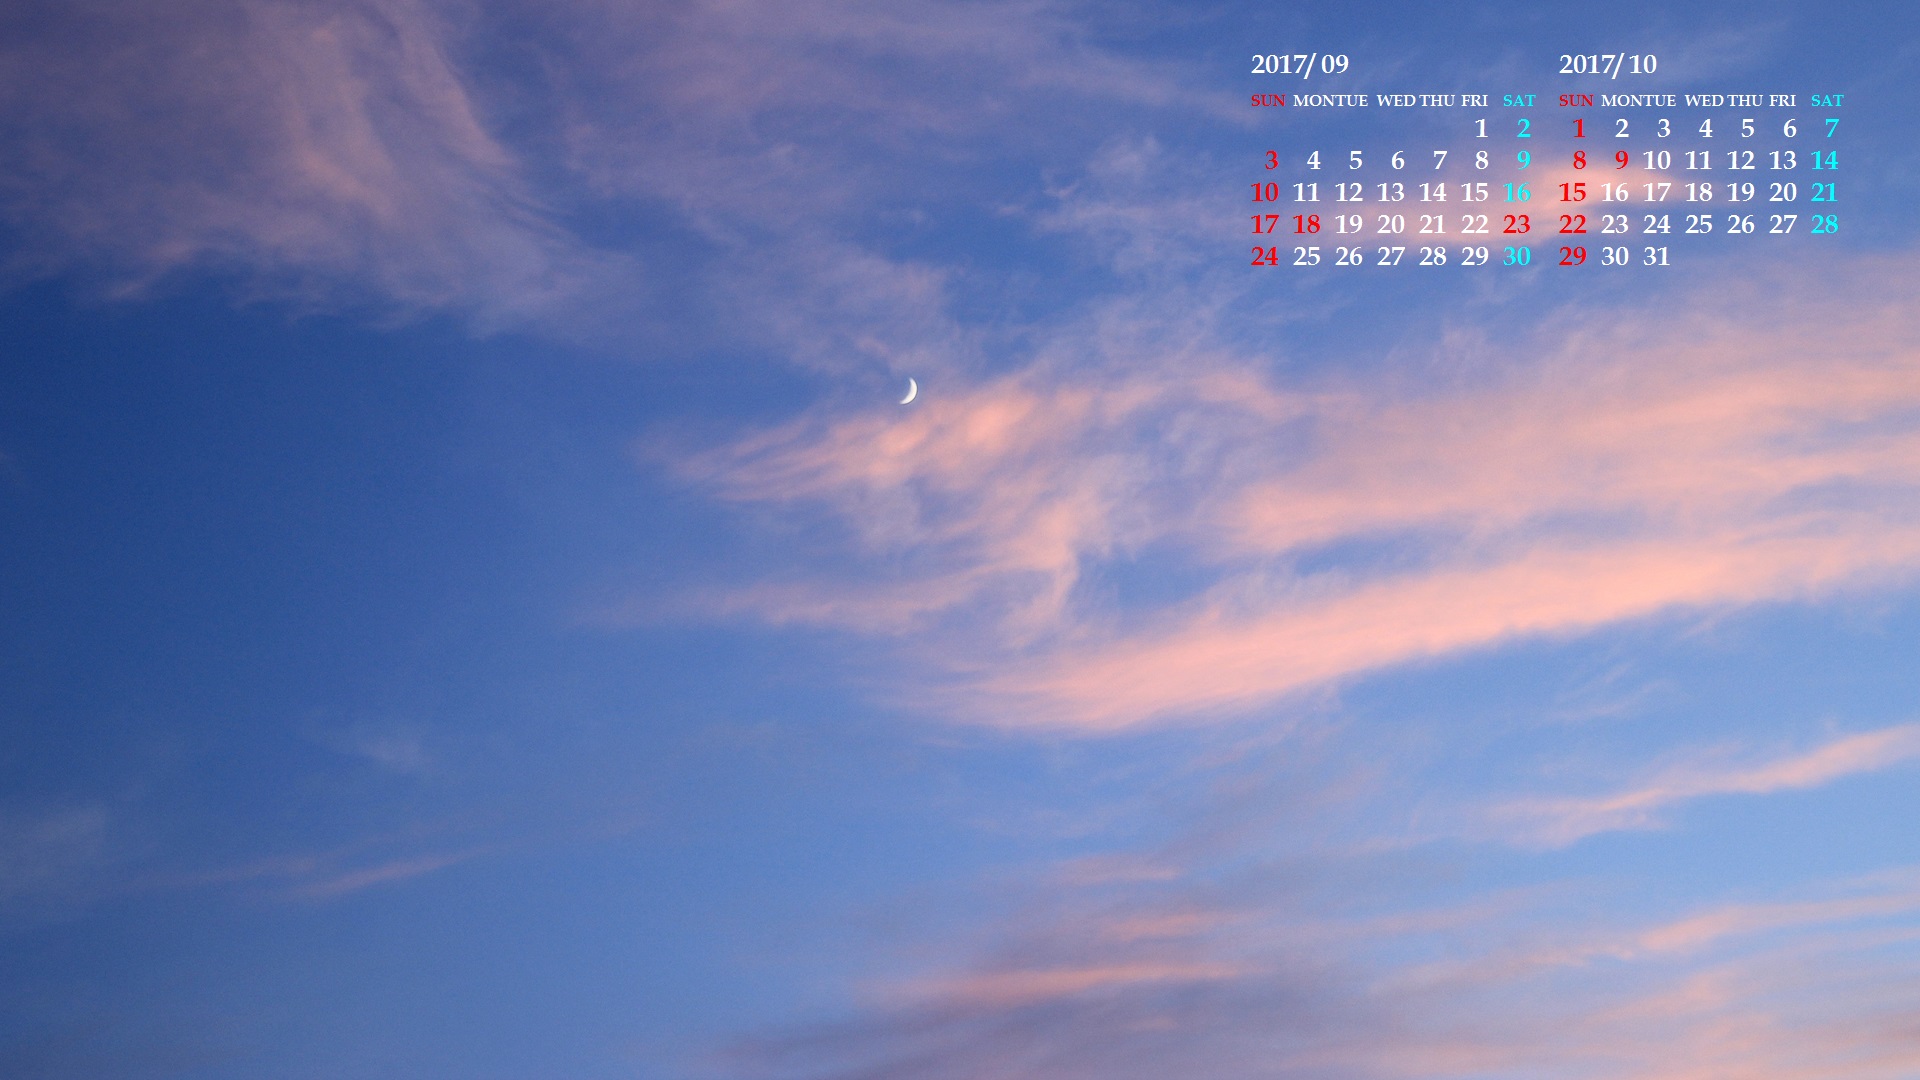 ピンクの雲と夕月 カレンダー壁紙館 昴 無料ワイド